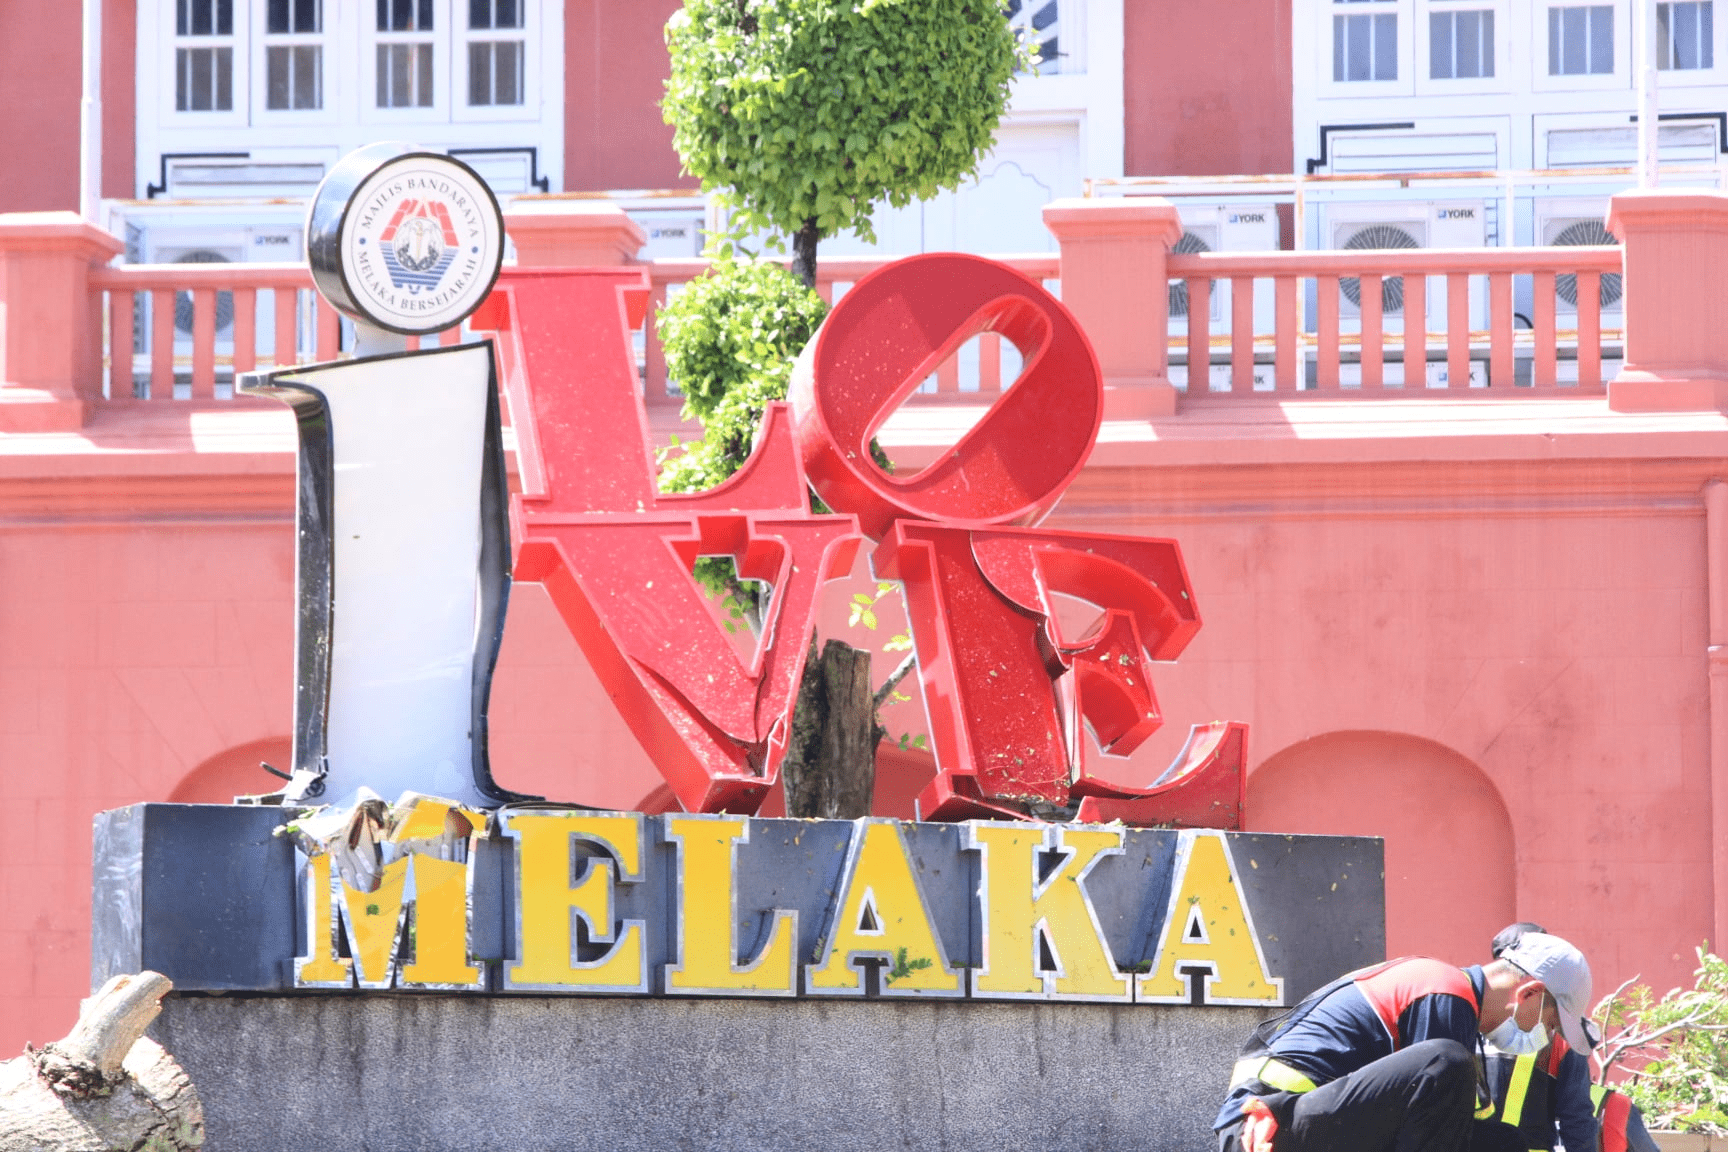 Fallen heritage tree in Melaka's iconic Dutch Square - I Love Melaka sign